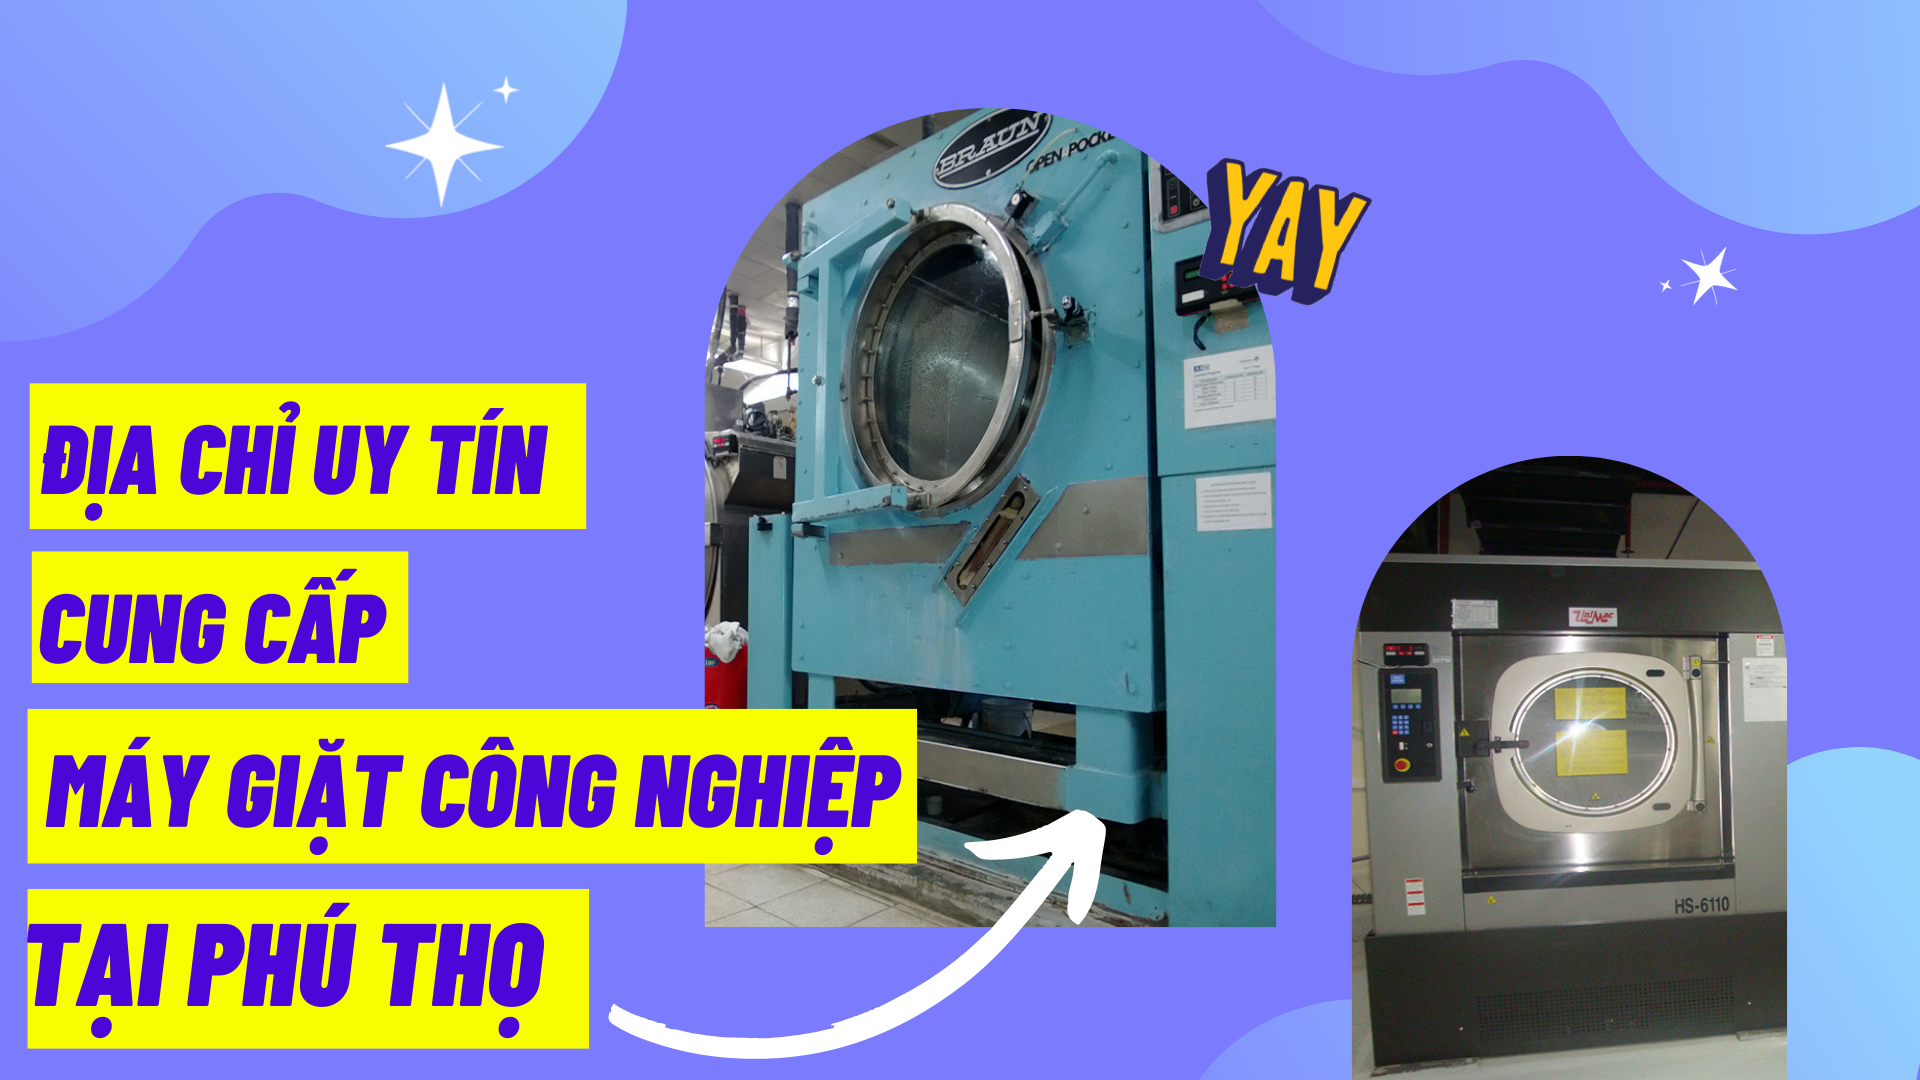 Địa chỉ uy tín cung cấp máy giặt công nghiệp tại Phú Thọ